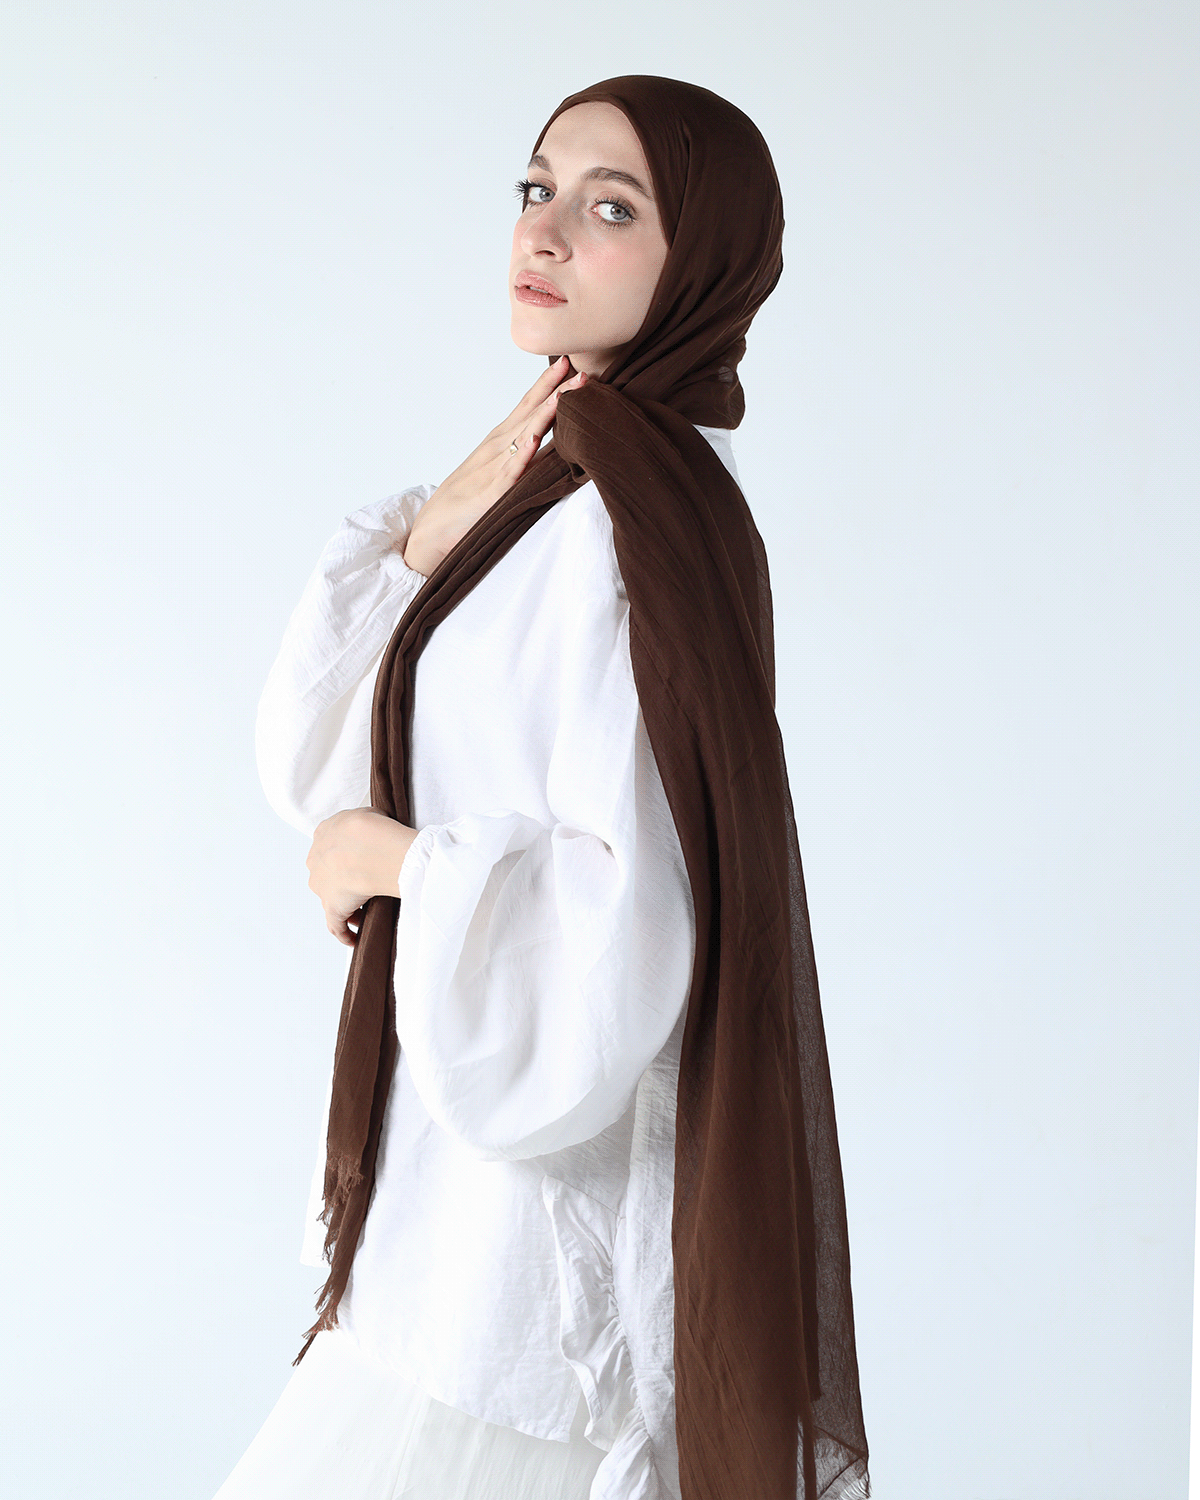 hejab fashion photography photographer Photography  photoshoot Fashion  scarf hijab modest model